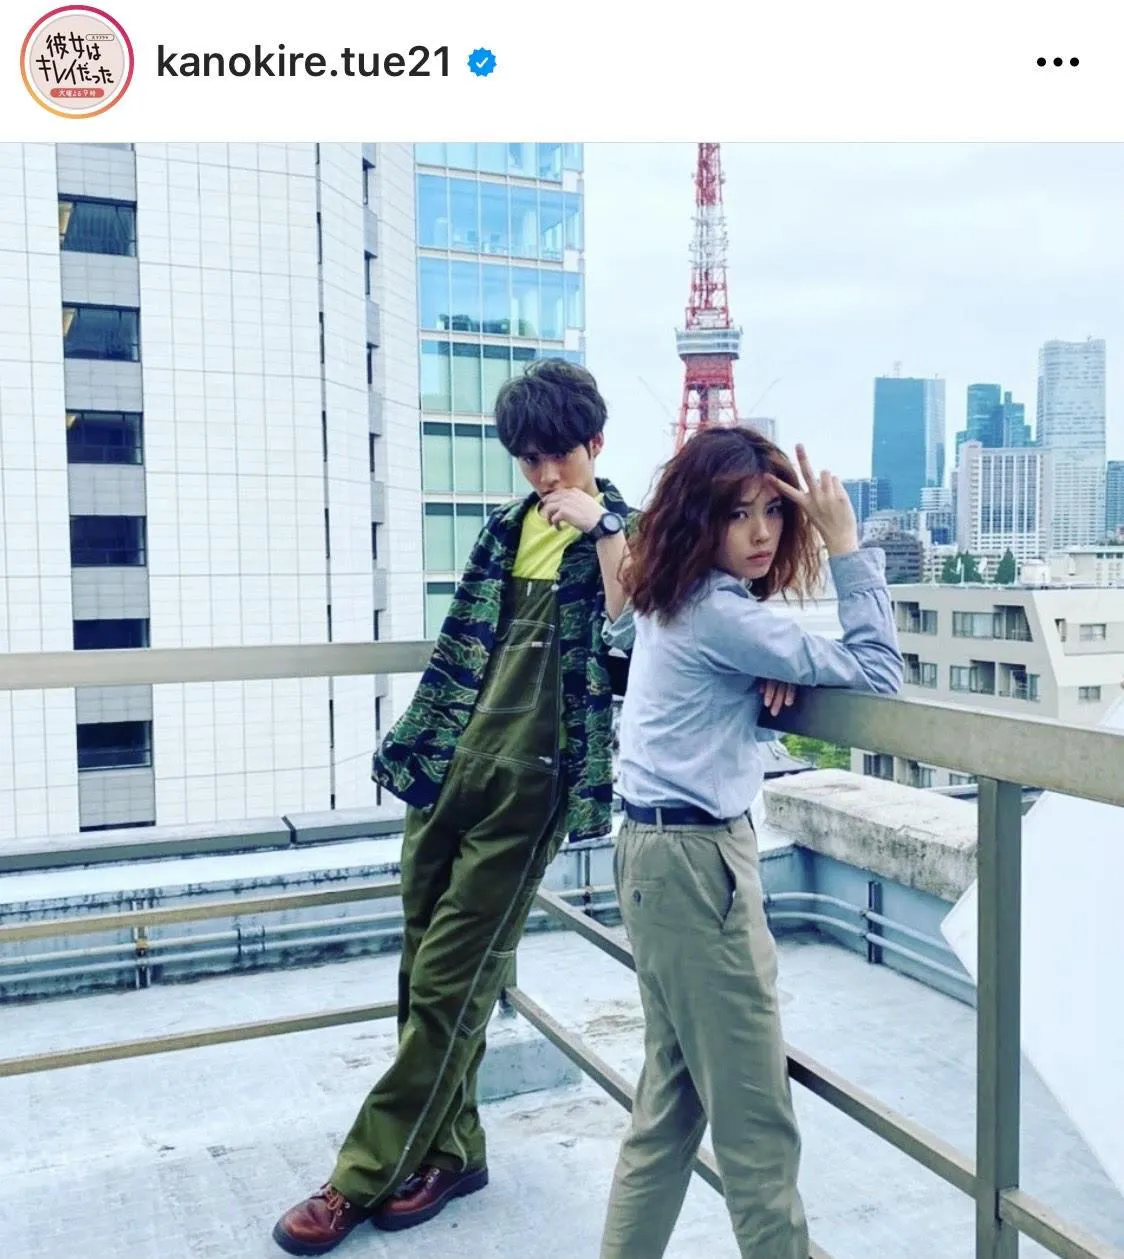 ※ドラマ「彼女はキレイだった」公式Instagram(kanokire.tue21)より